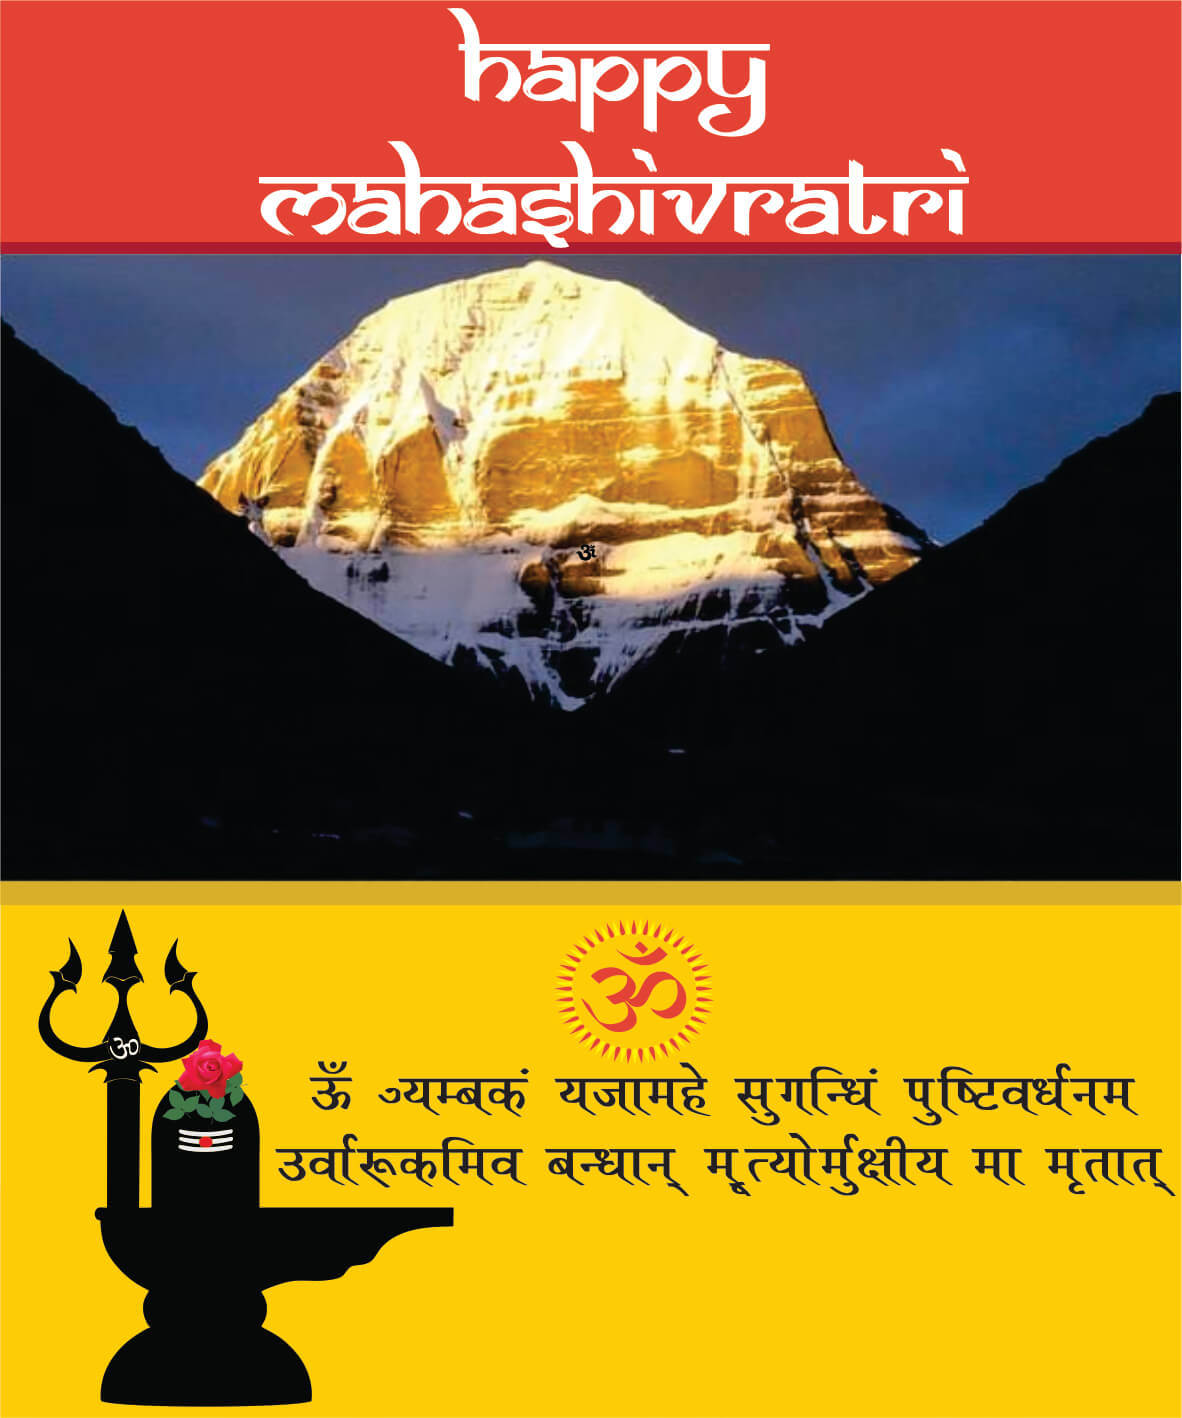 Mahashivratri_21 | eGreetings Portal